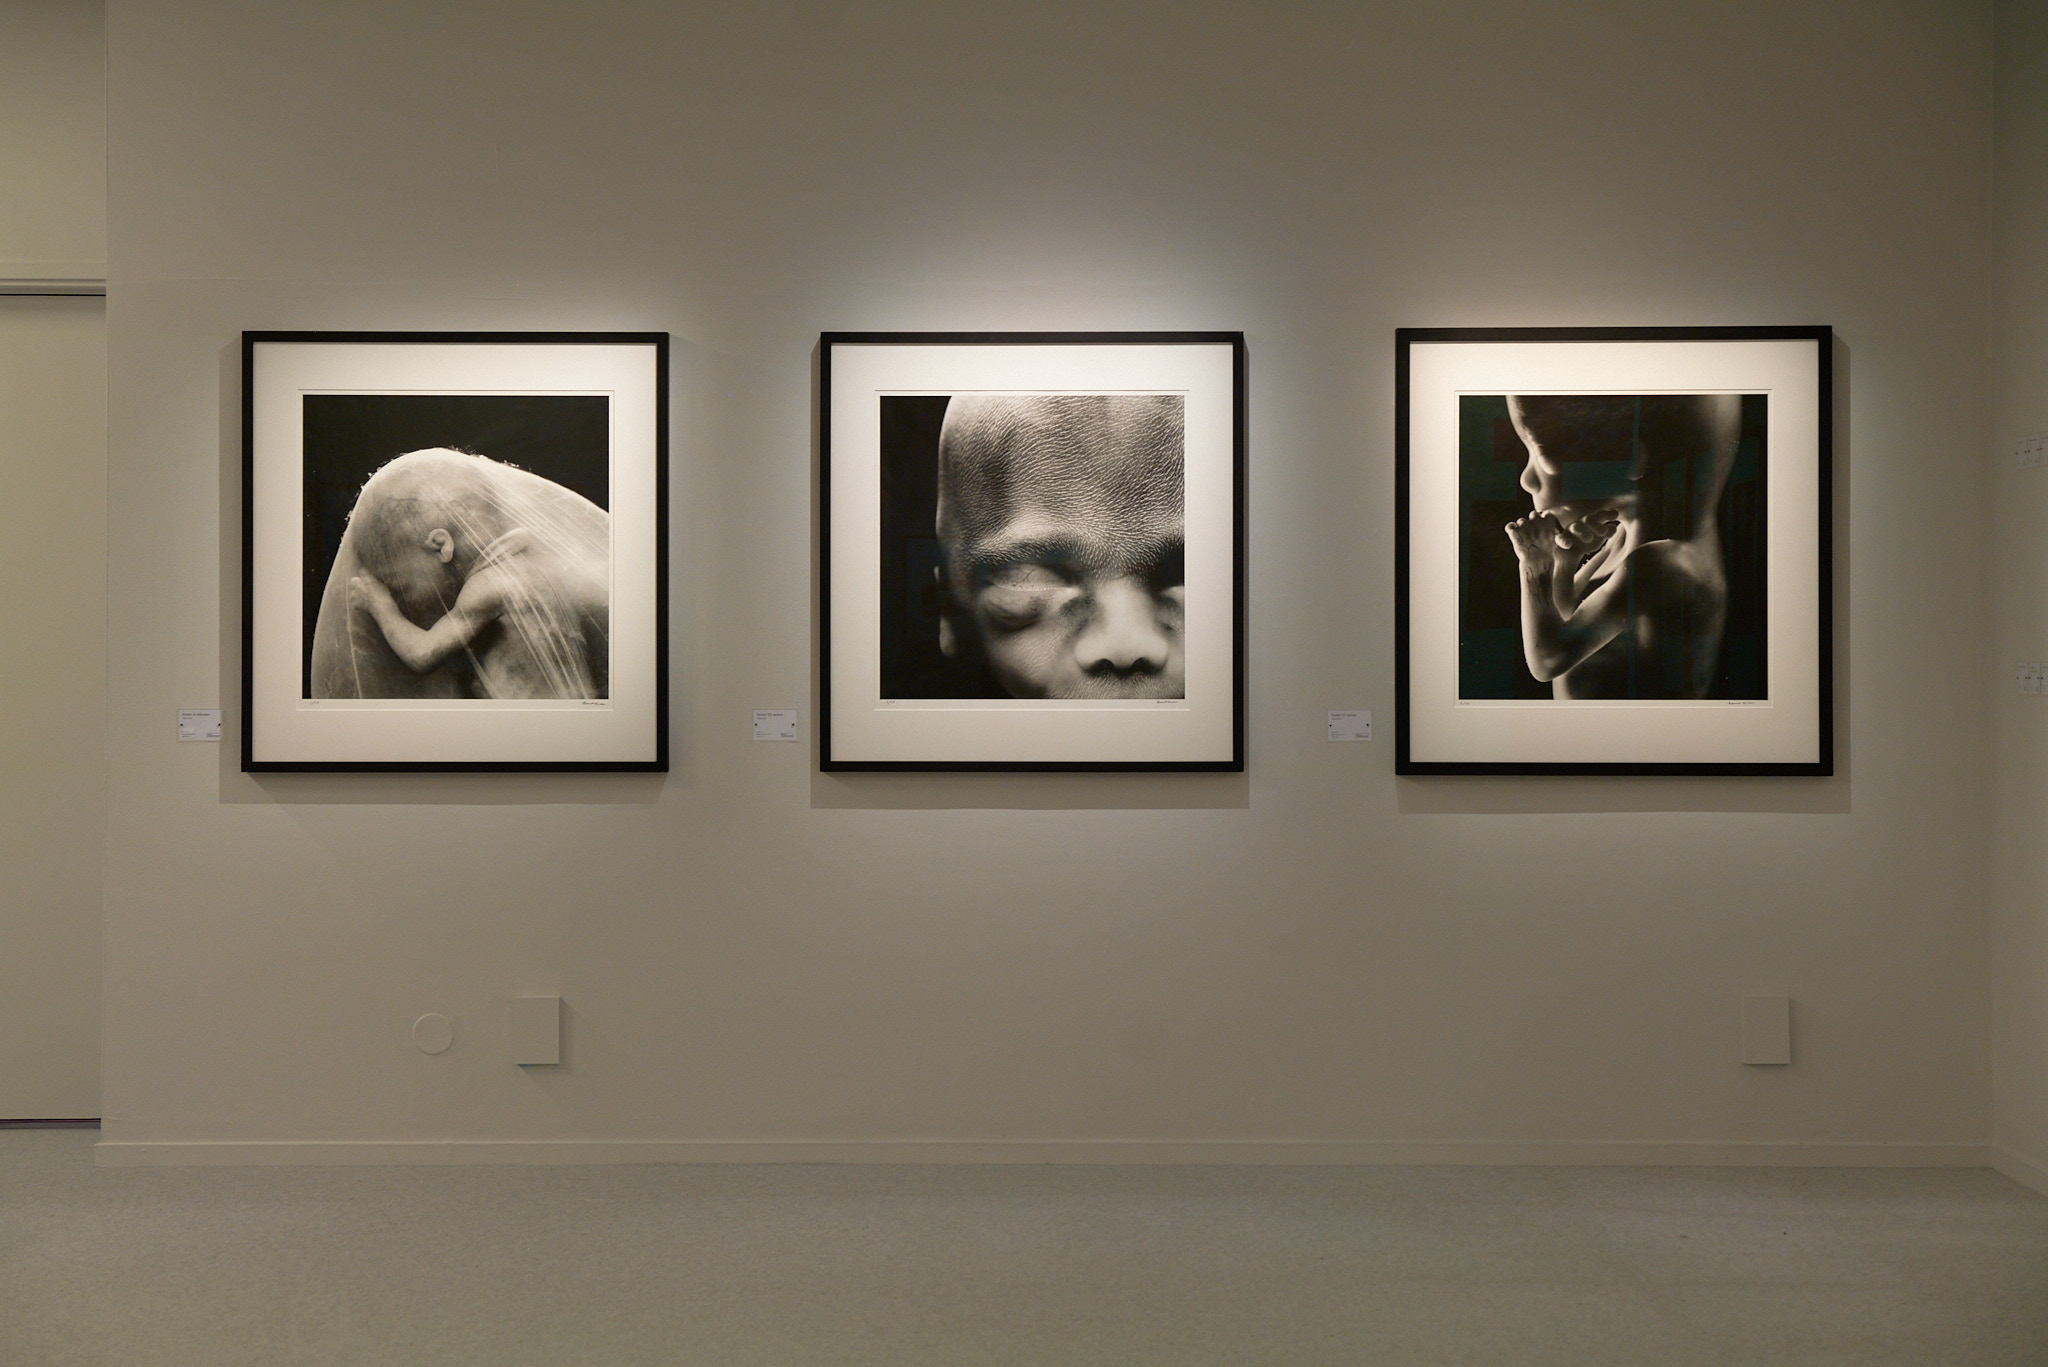 Tre svartvita fotografier bredvid varandra på en vägg. Fotografierna föreställer foster.